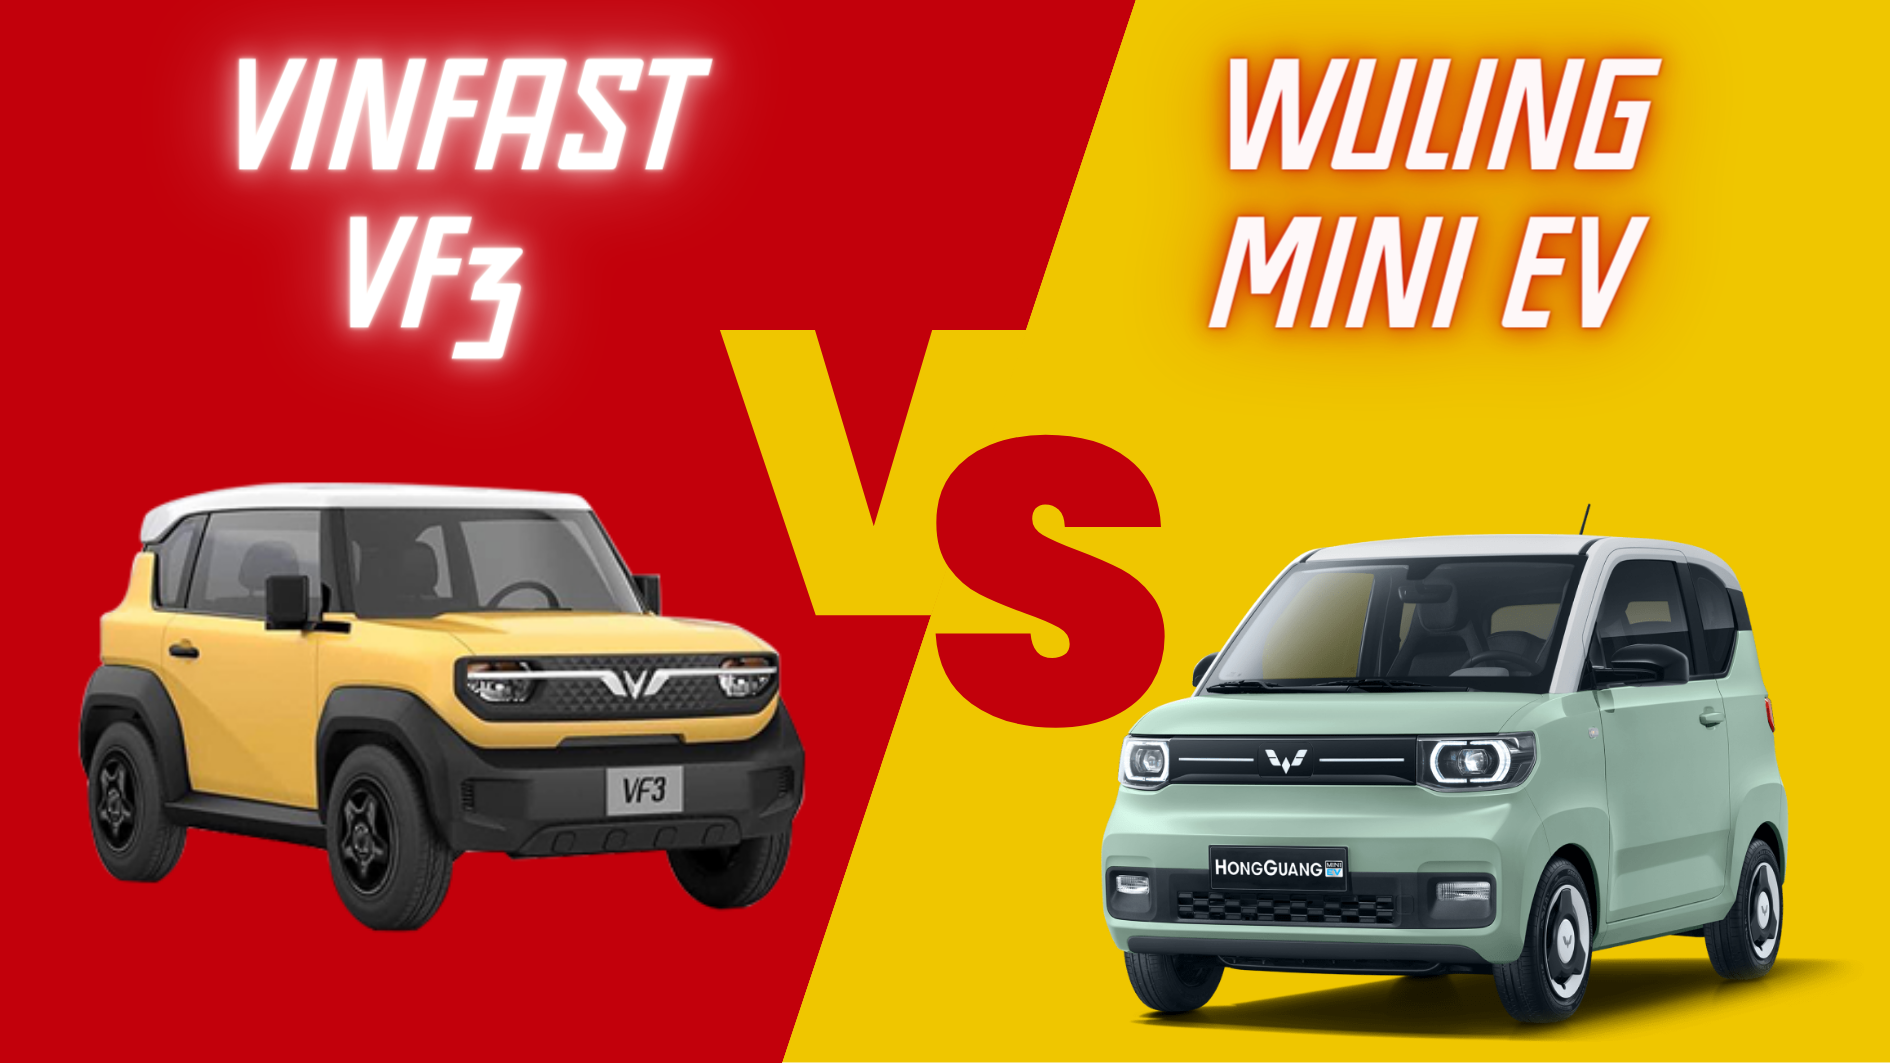  So sánh VinFast VF3 và Wuling Mini EV: thông số kỹ thuật, động cơ, tiện nghi